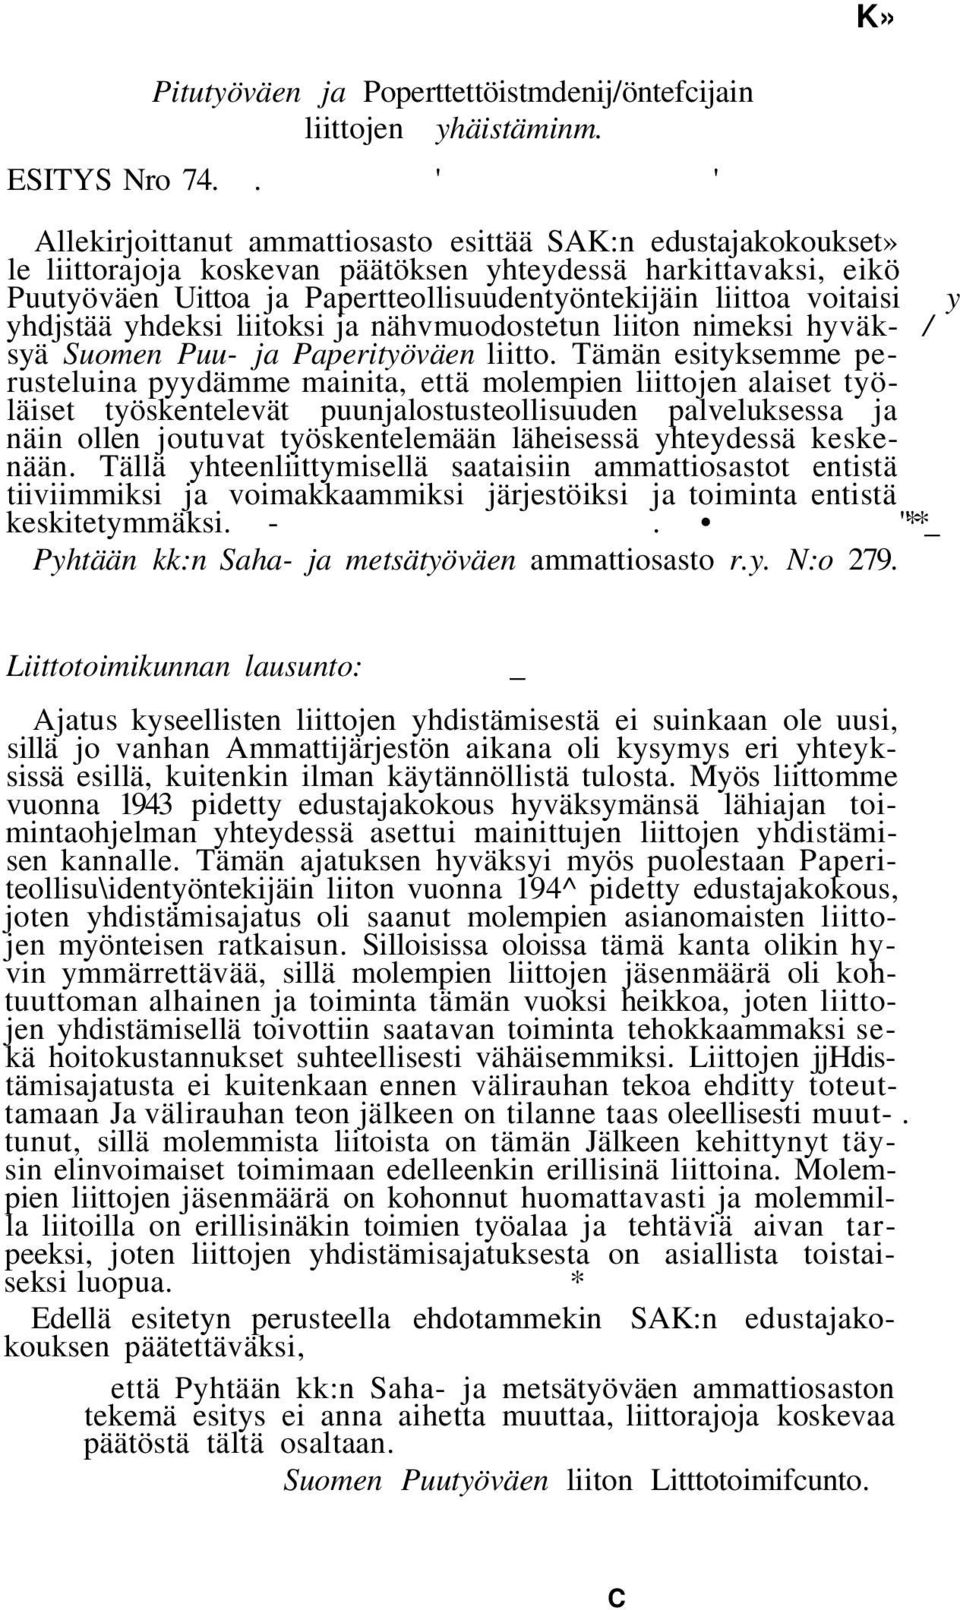 voitaisi y yhdjstää yhdeksi liitoksi ja nähvmuodostetun liiton nimeksi hyväk- / syä Suomen Puu- ja Paperityöväen liitto.